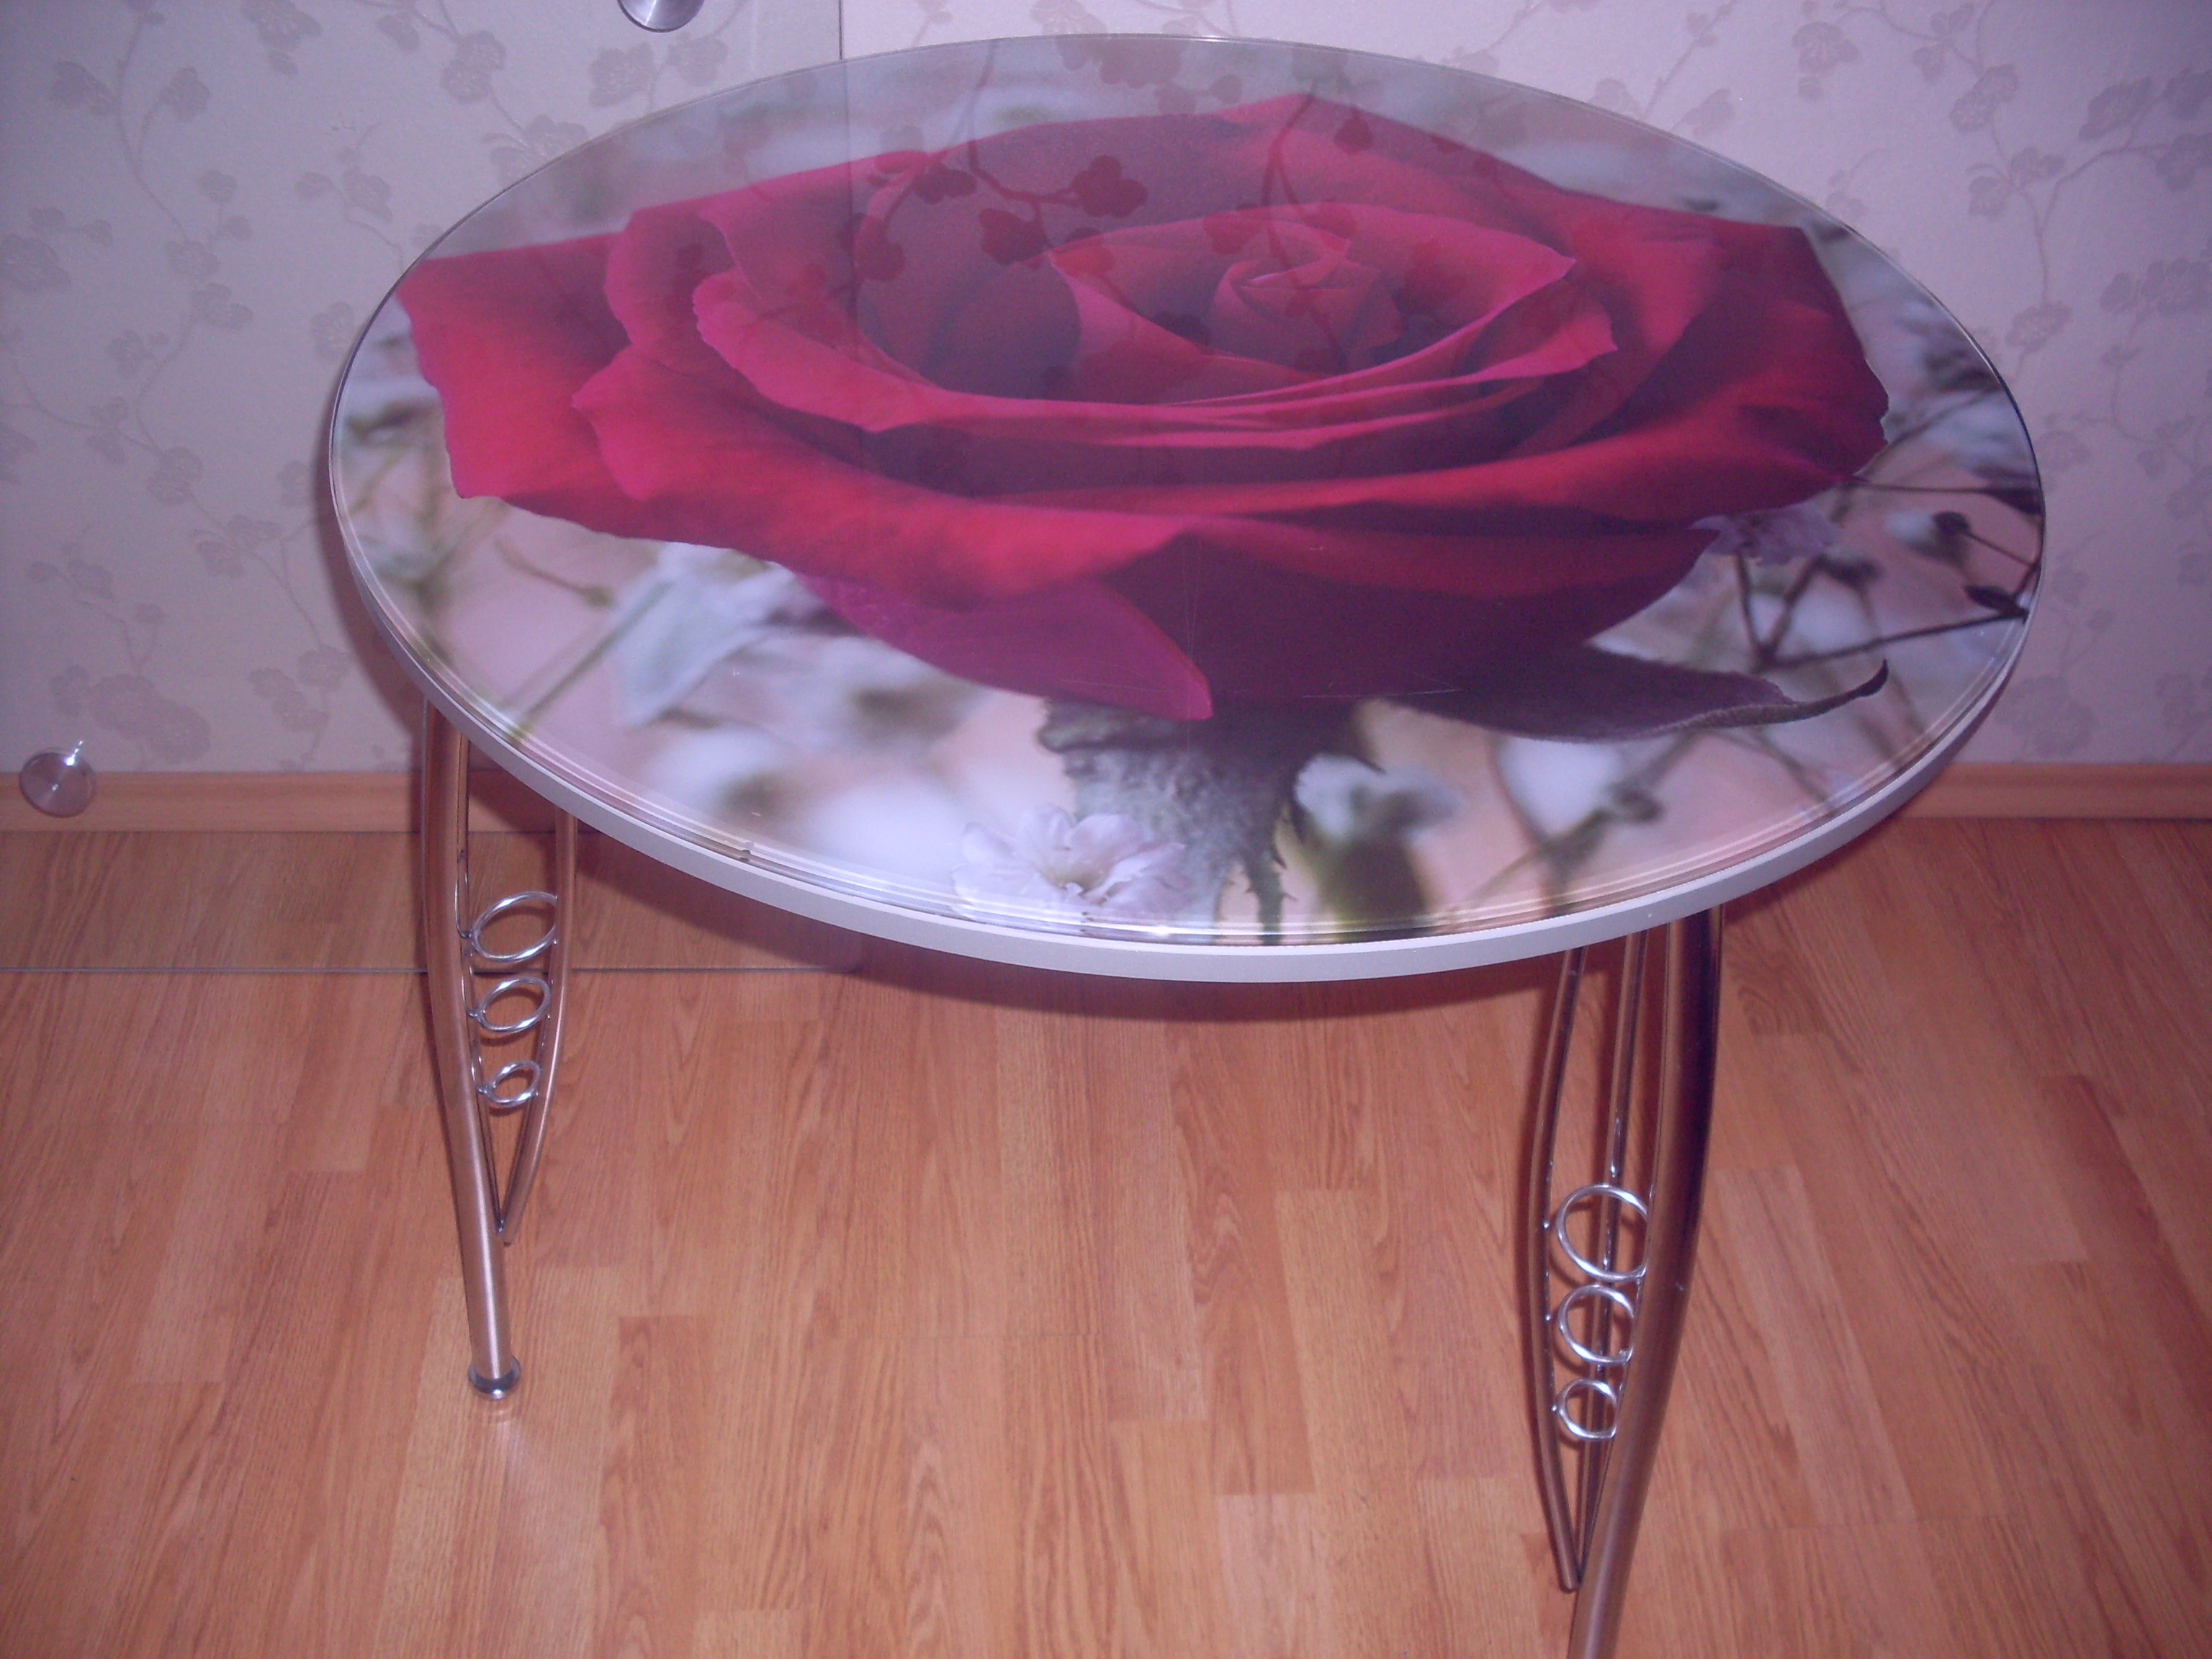 Стол с розами стеклянный